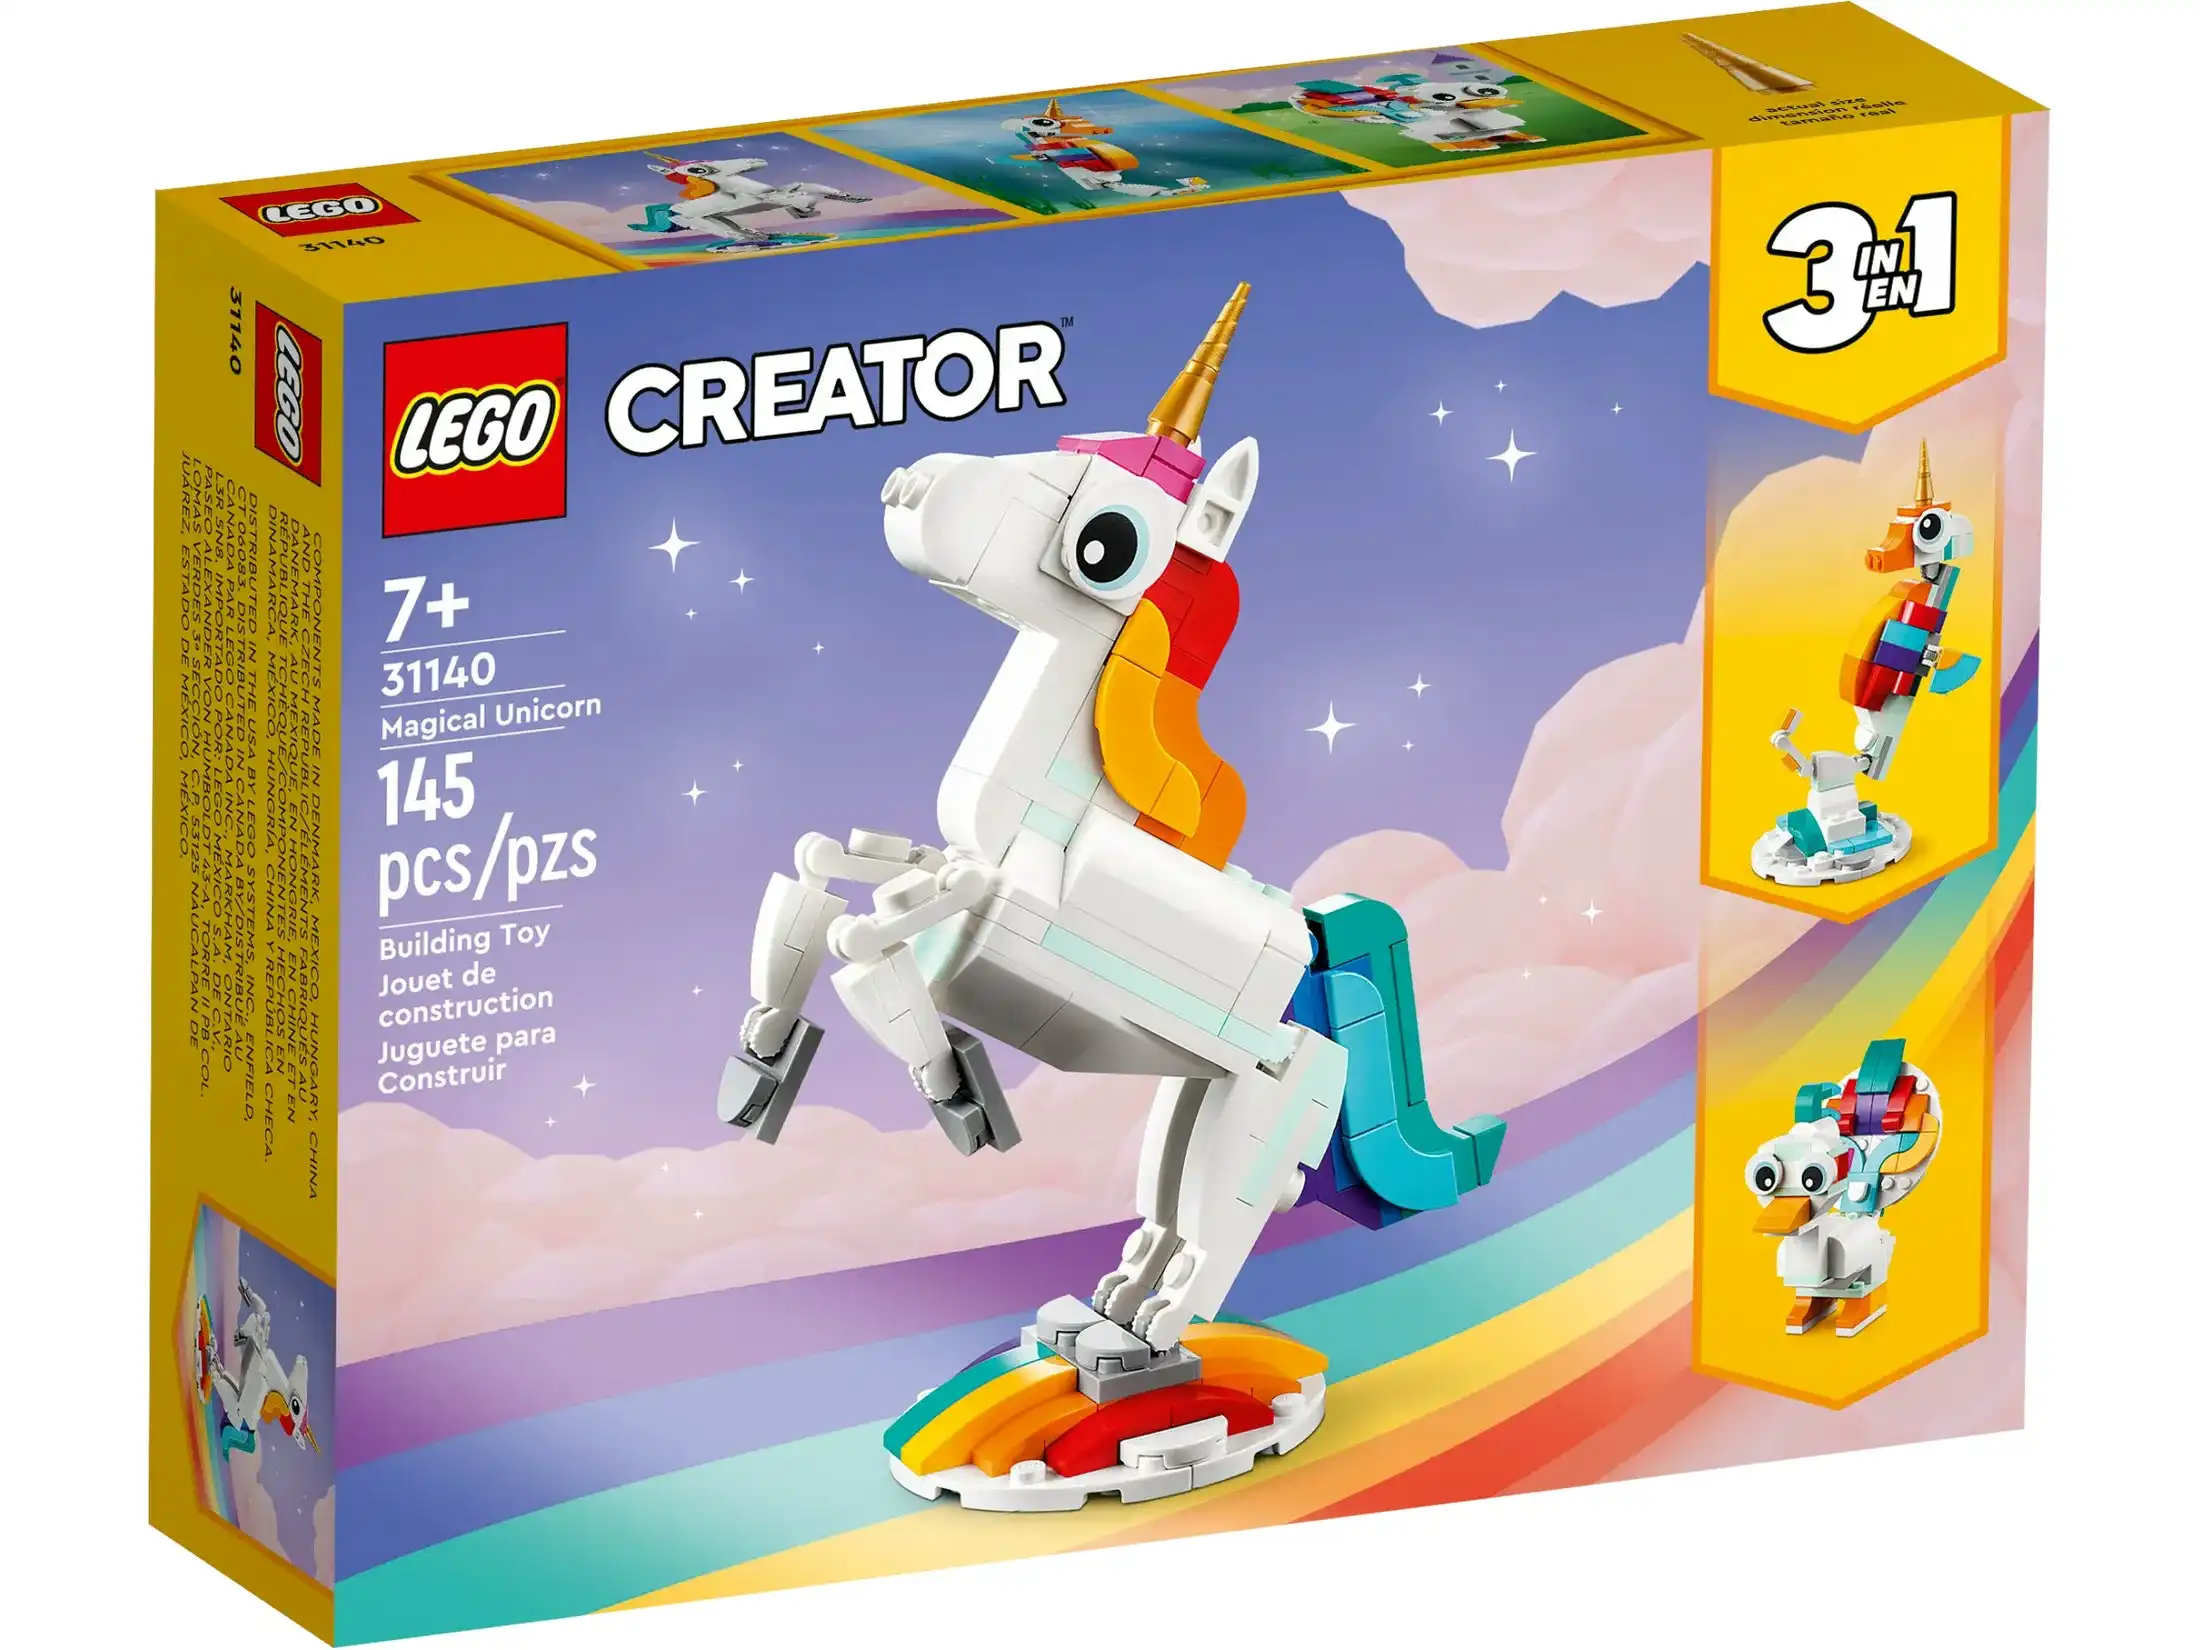 LEGO 31140 Magical Unicorn -Creator 3in1